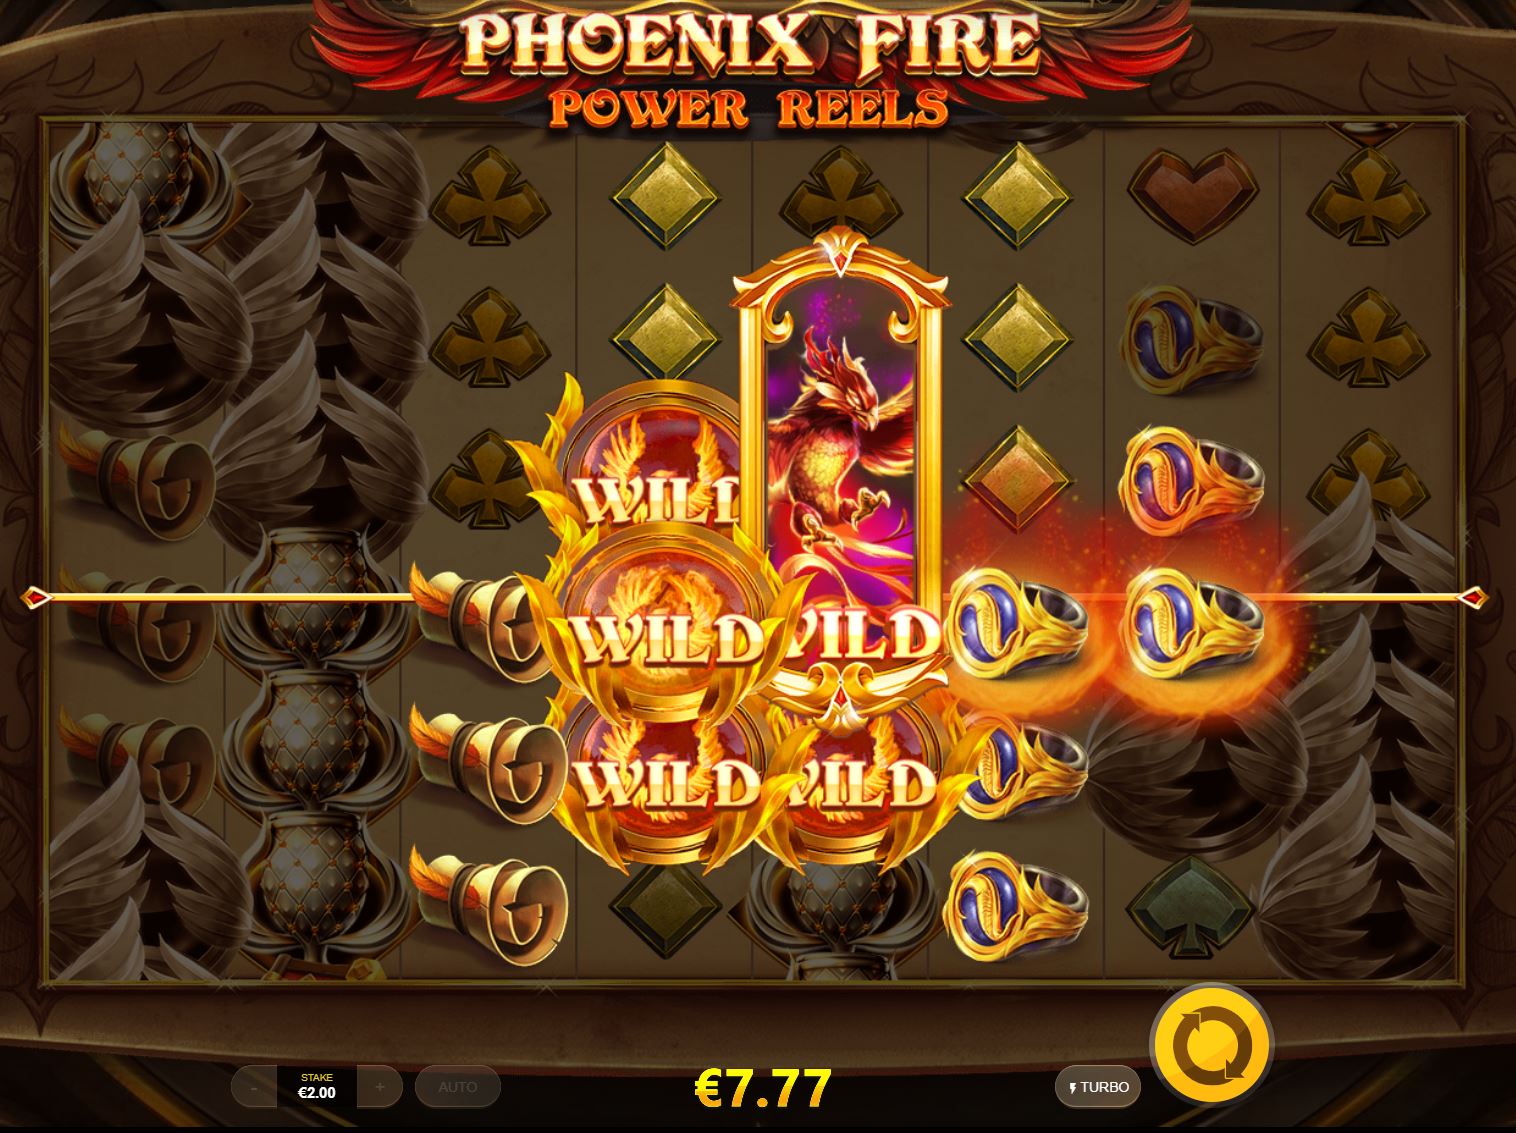 Phoenix fire power reels slot